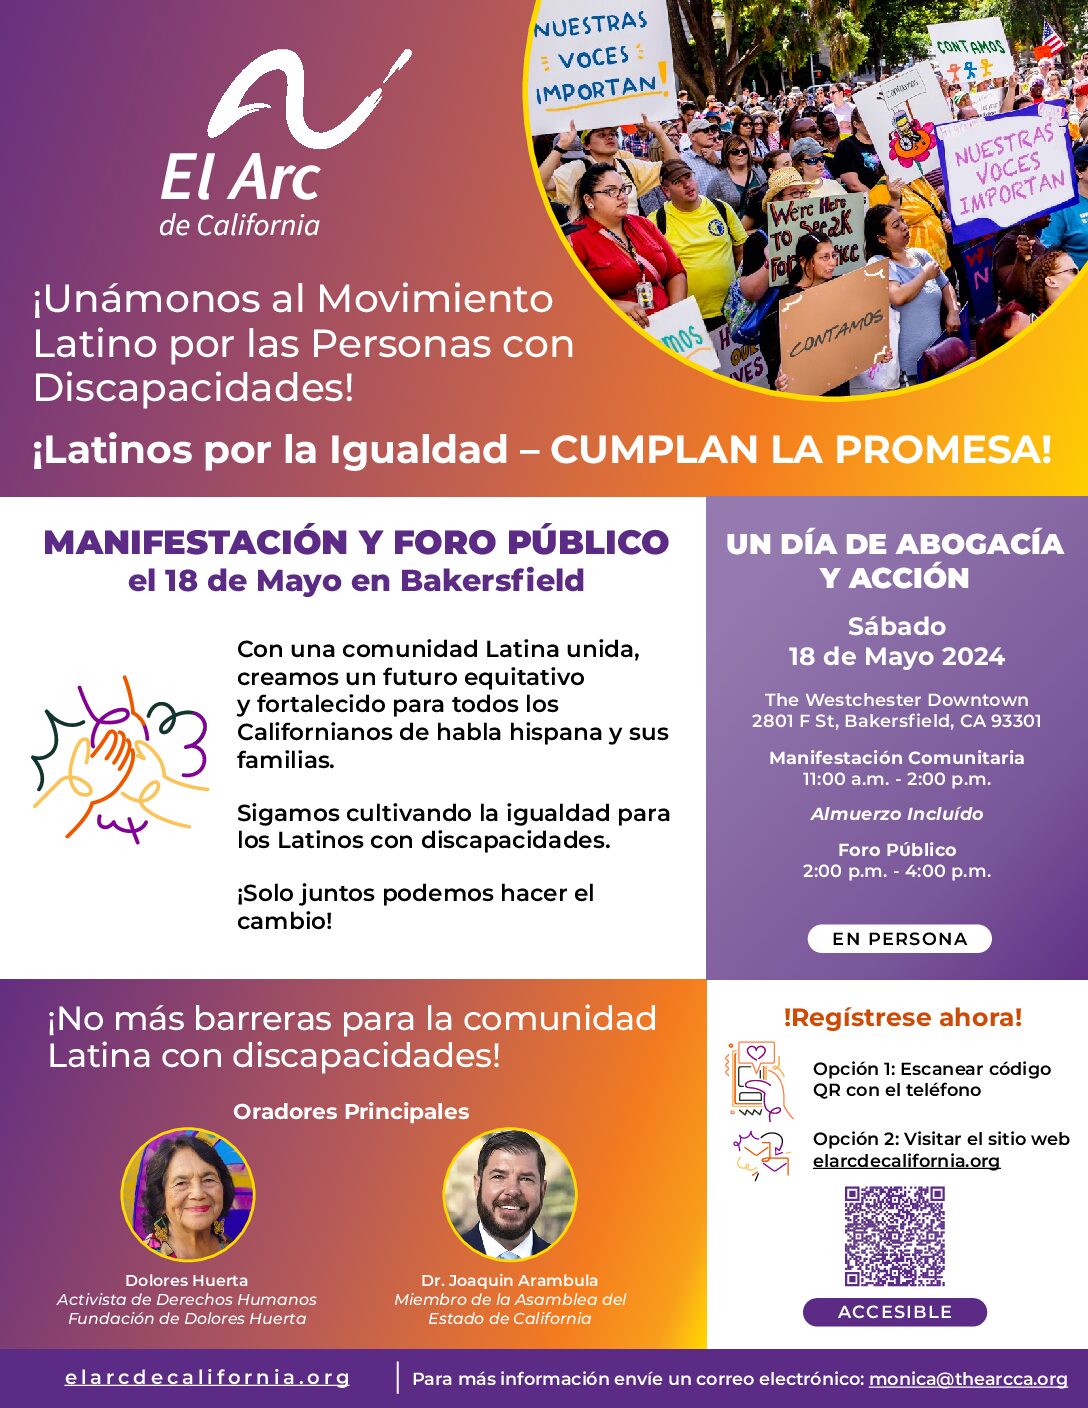 ¡Únase al movimiento latino por discapacidad! – Latinos por la Equidad – ¡CUMPLA LA PROMESA!